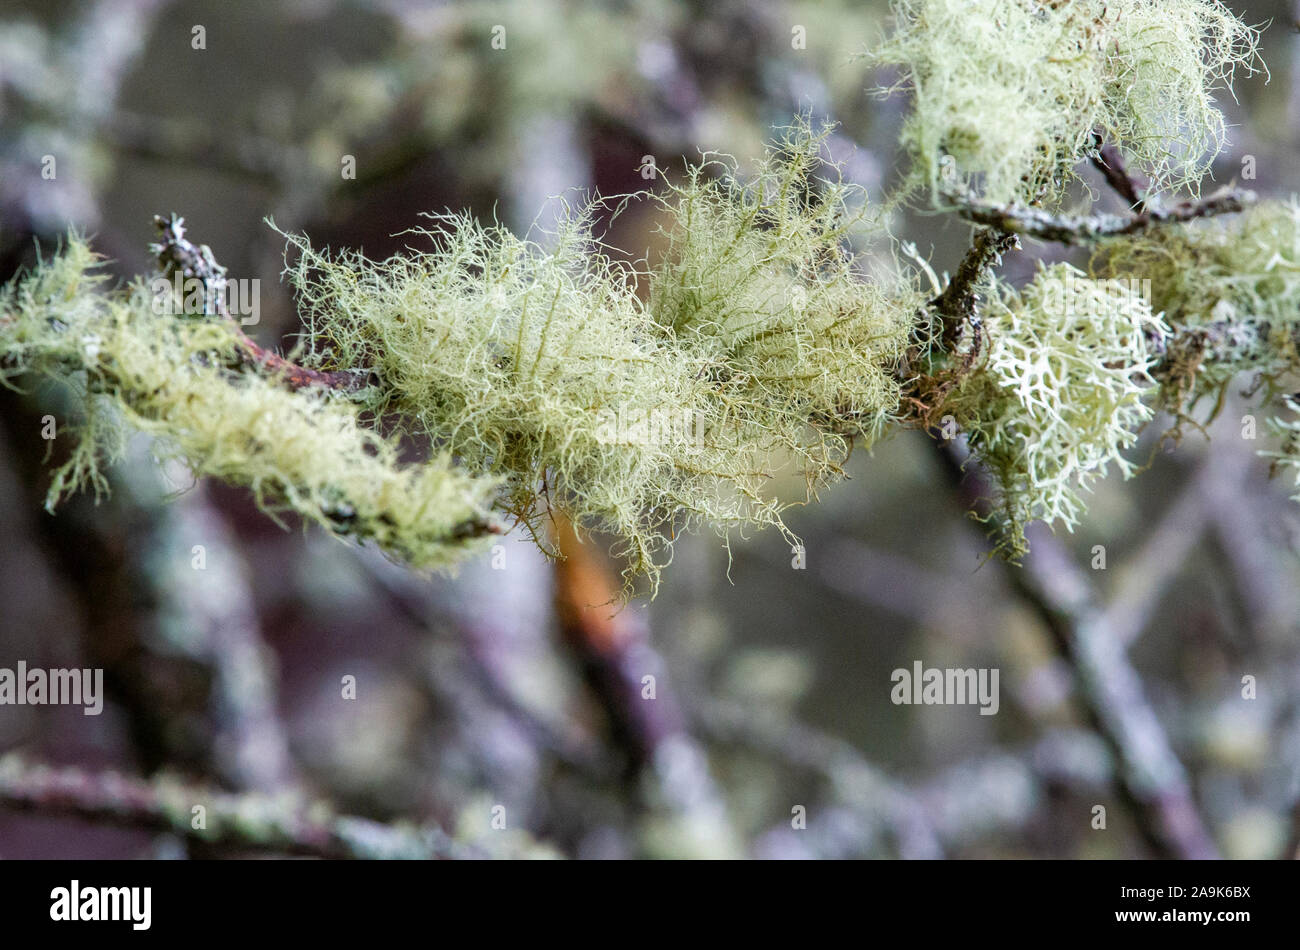 Lichen bush Stock Photo